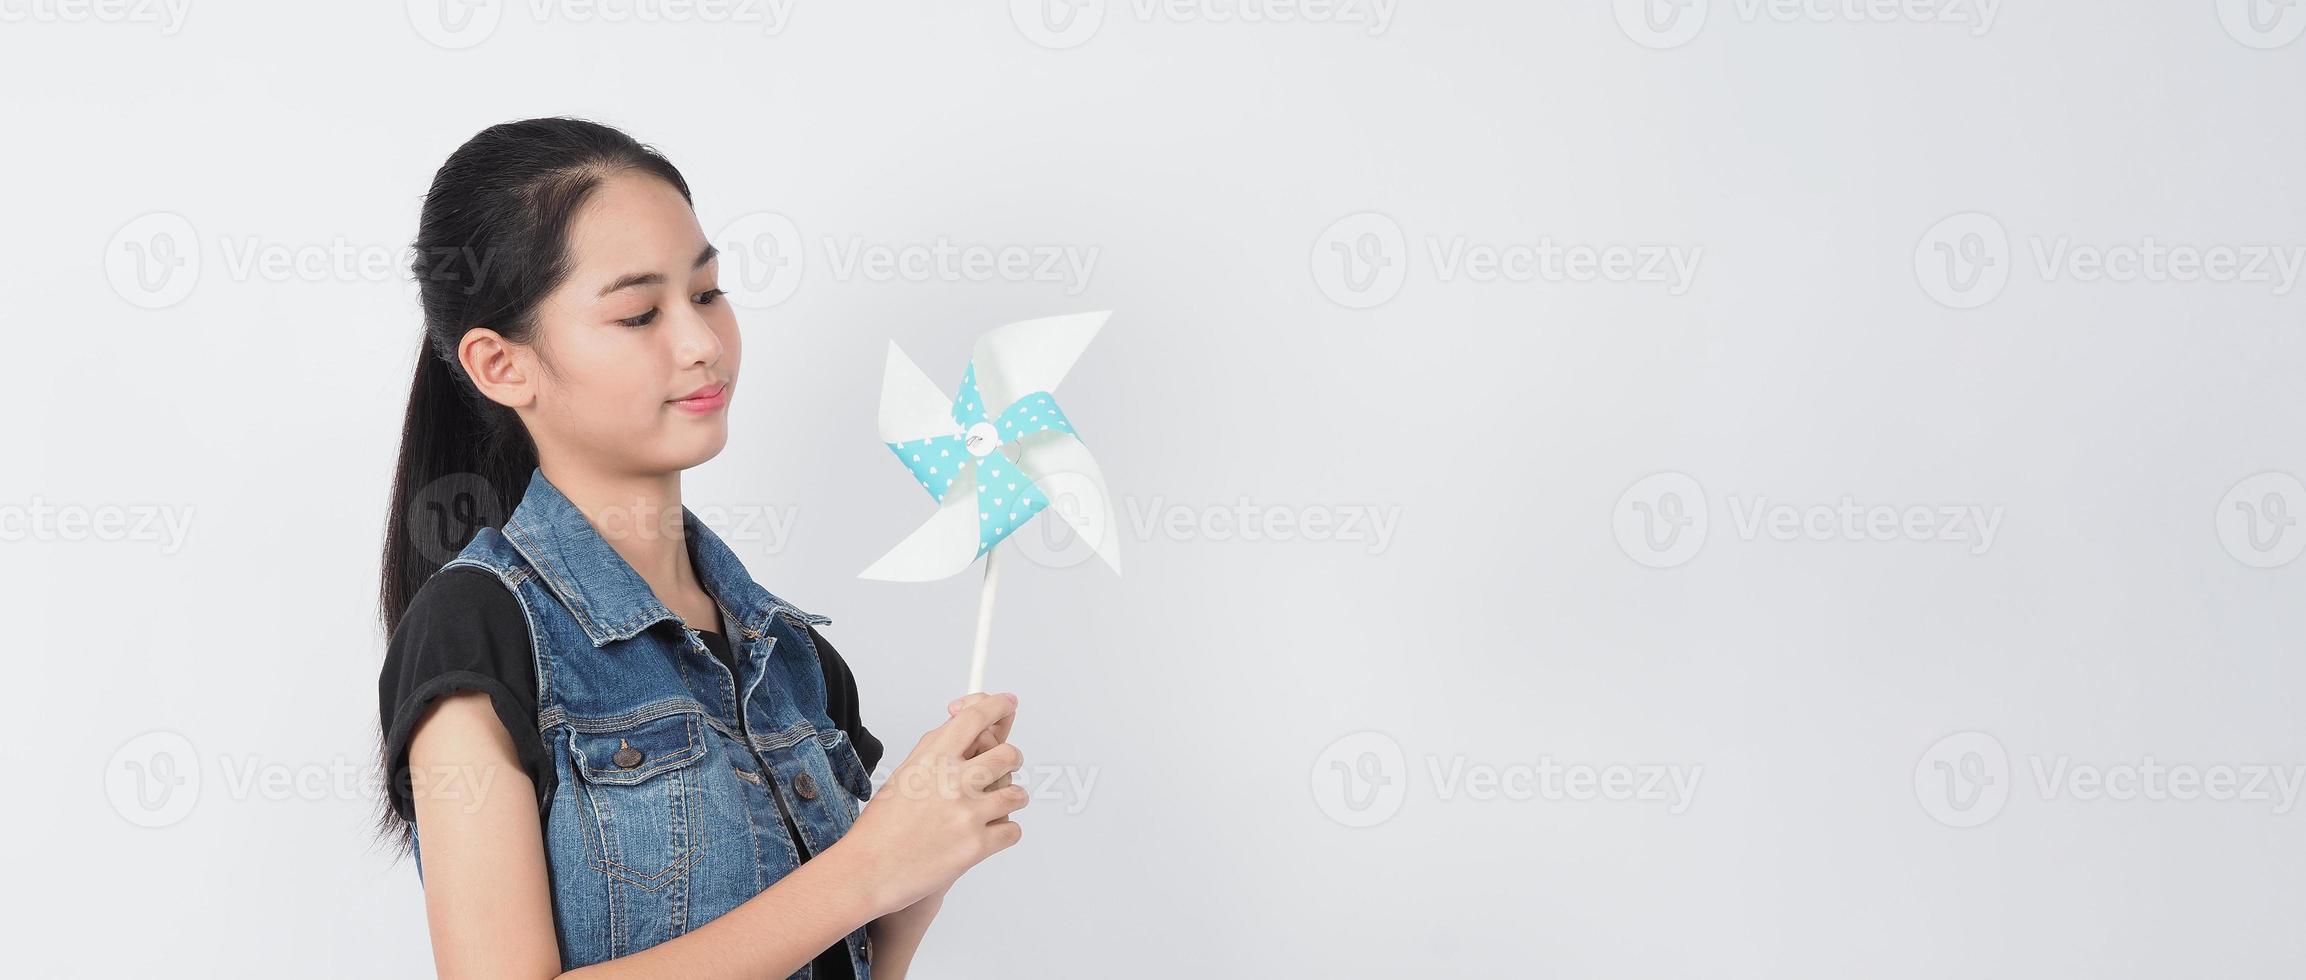 tonårs kvinna och papper väderkvarn leksaker. tonåring med vindhjulspinne foto